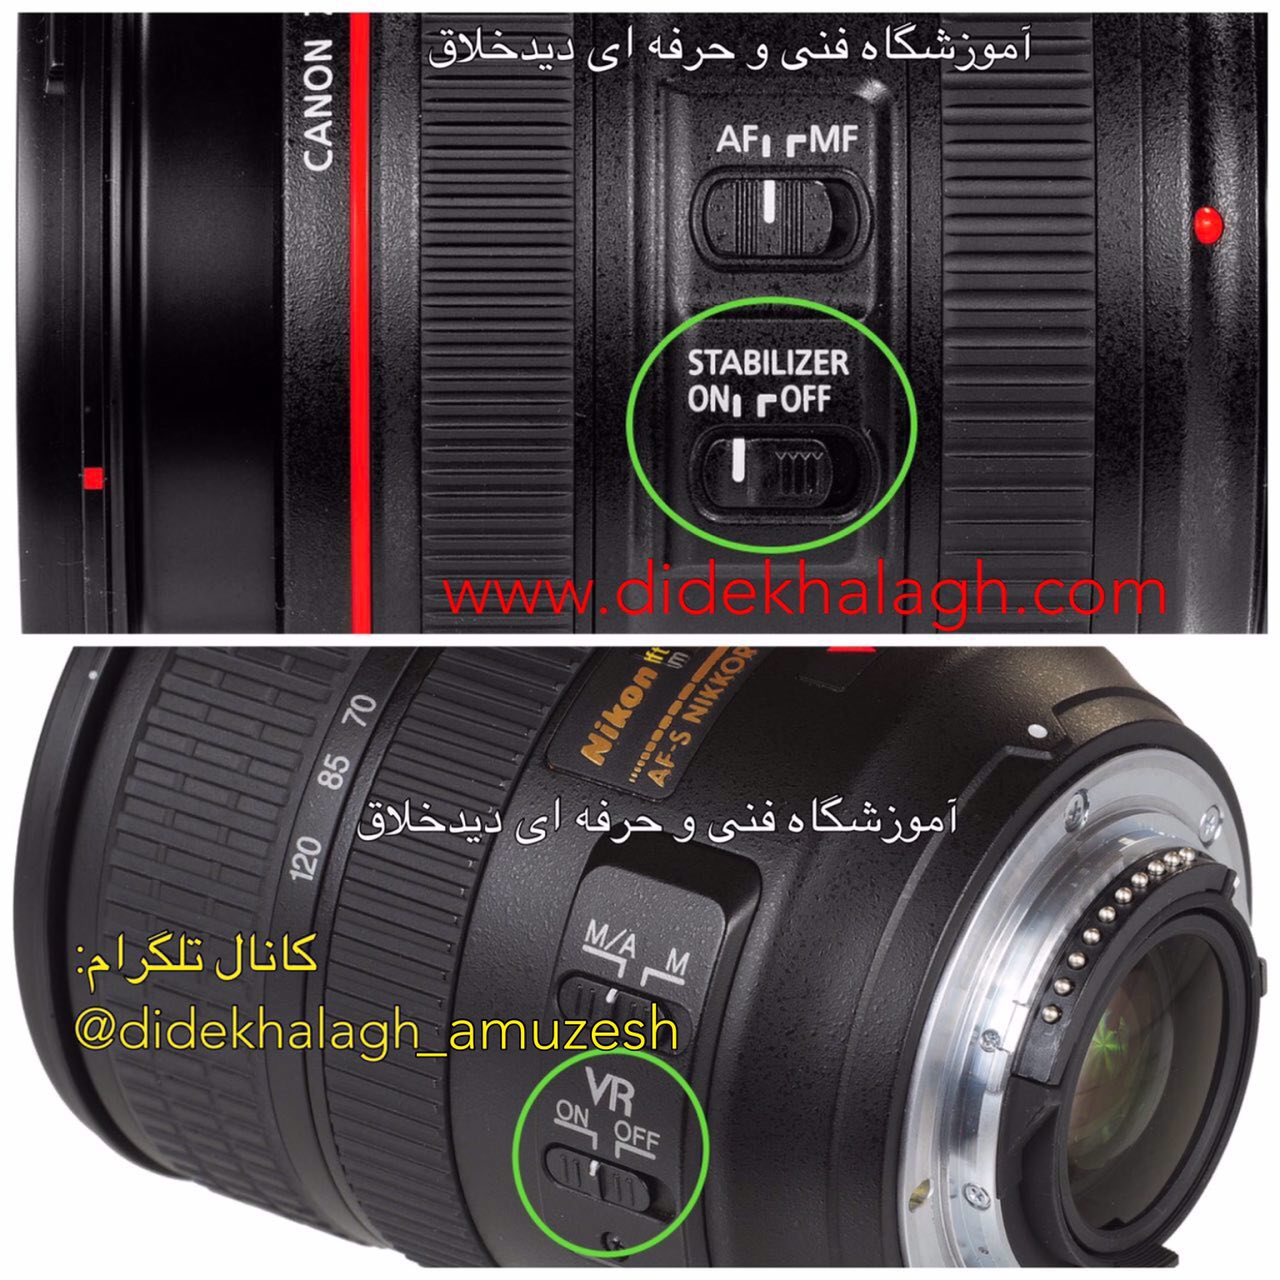 تنظیم استابلایزر لنز برای گرفتن عکس پنینگ در دوربین های کنون (Canon) و نیکون (Nikon)